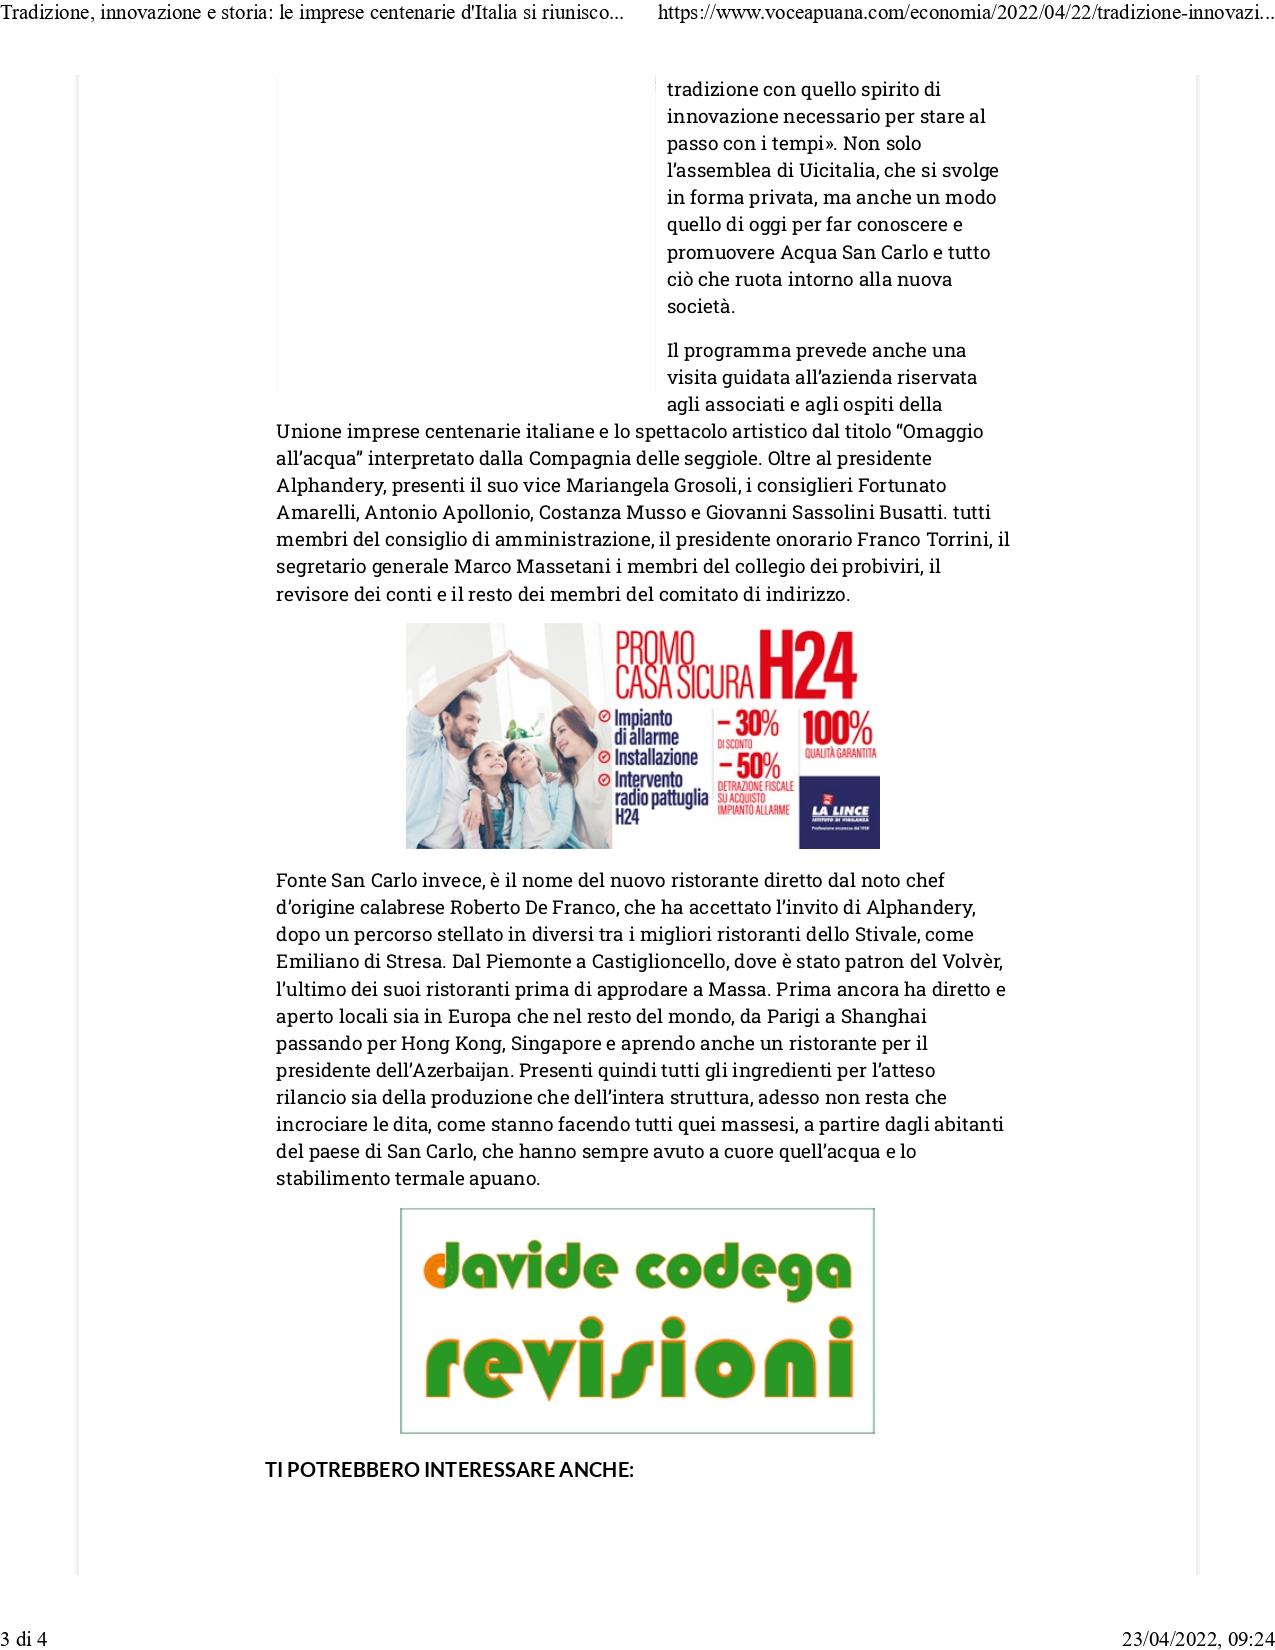 Tradizione innovazione e storia La voce Apuana 22 aprile 2022 page 0003